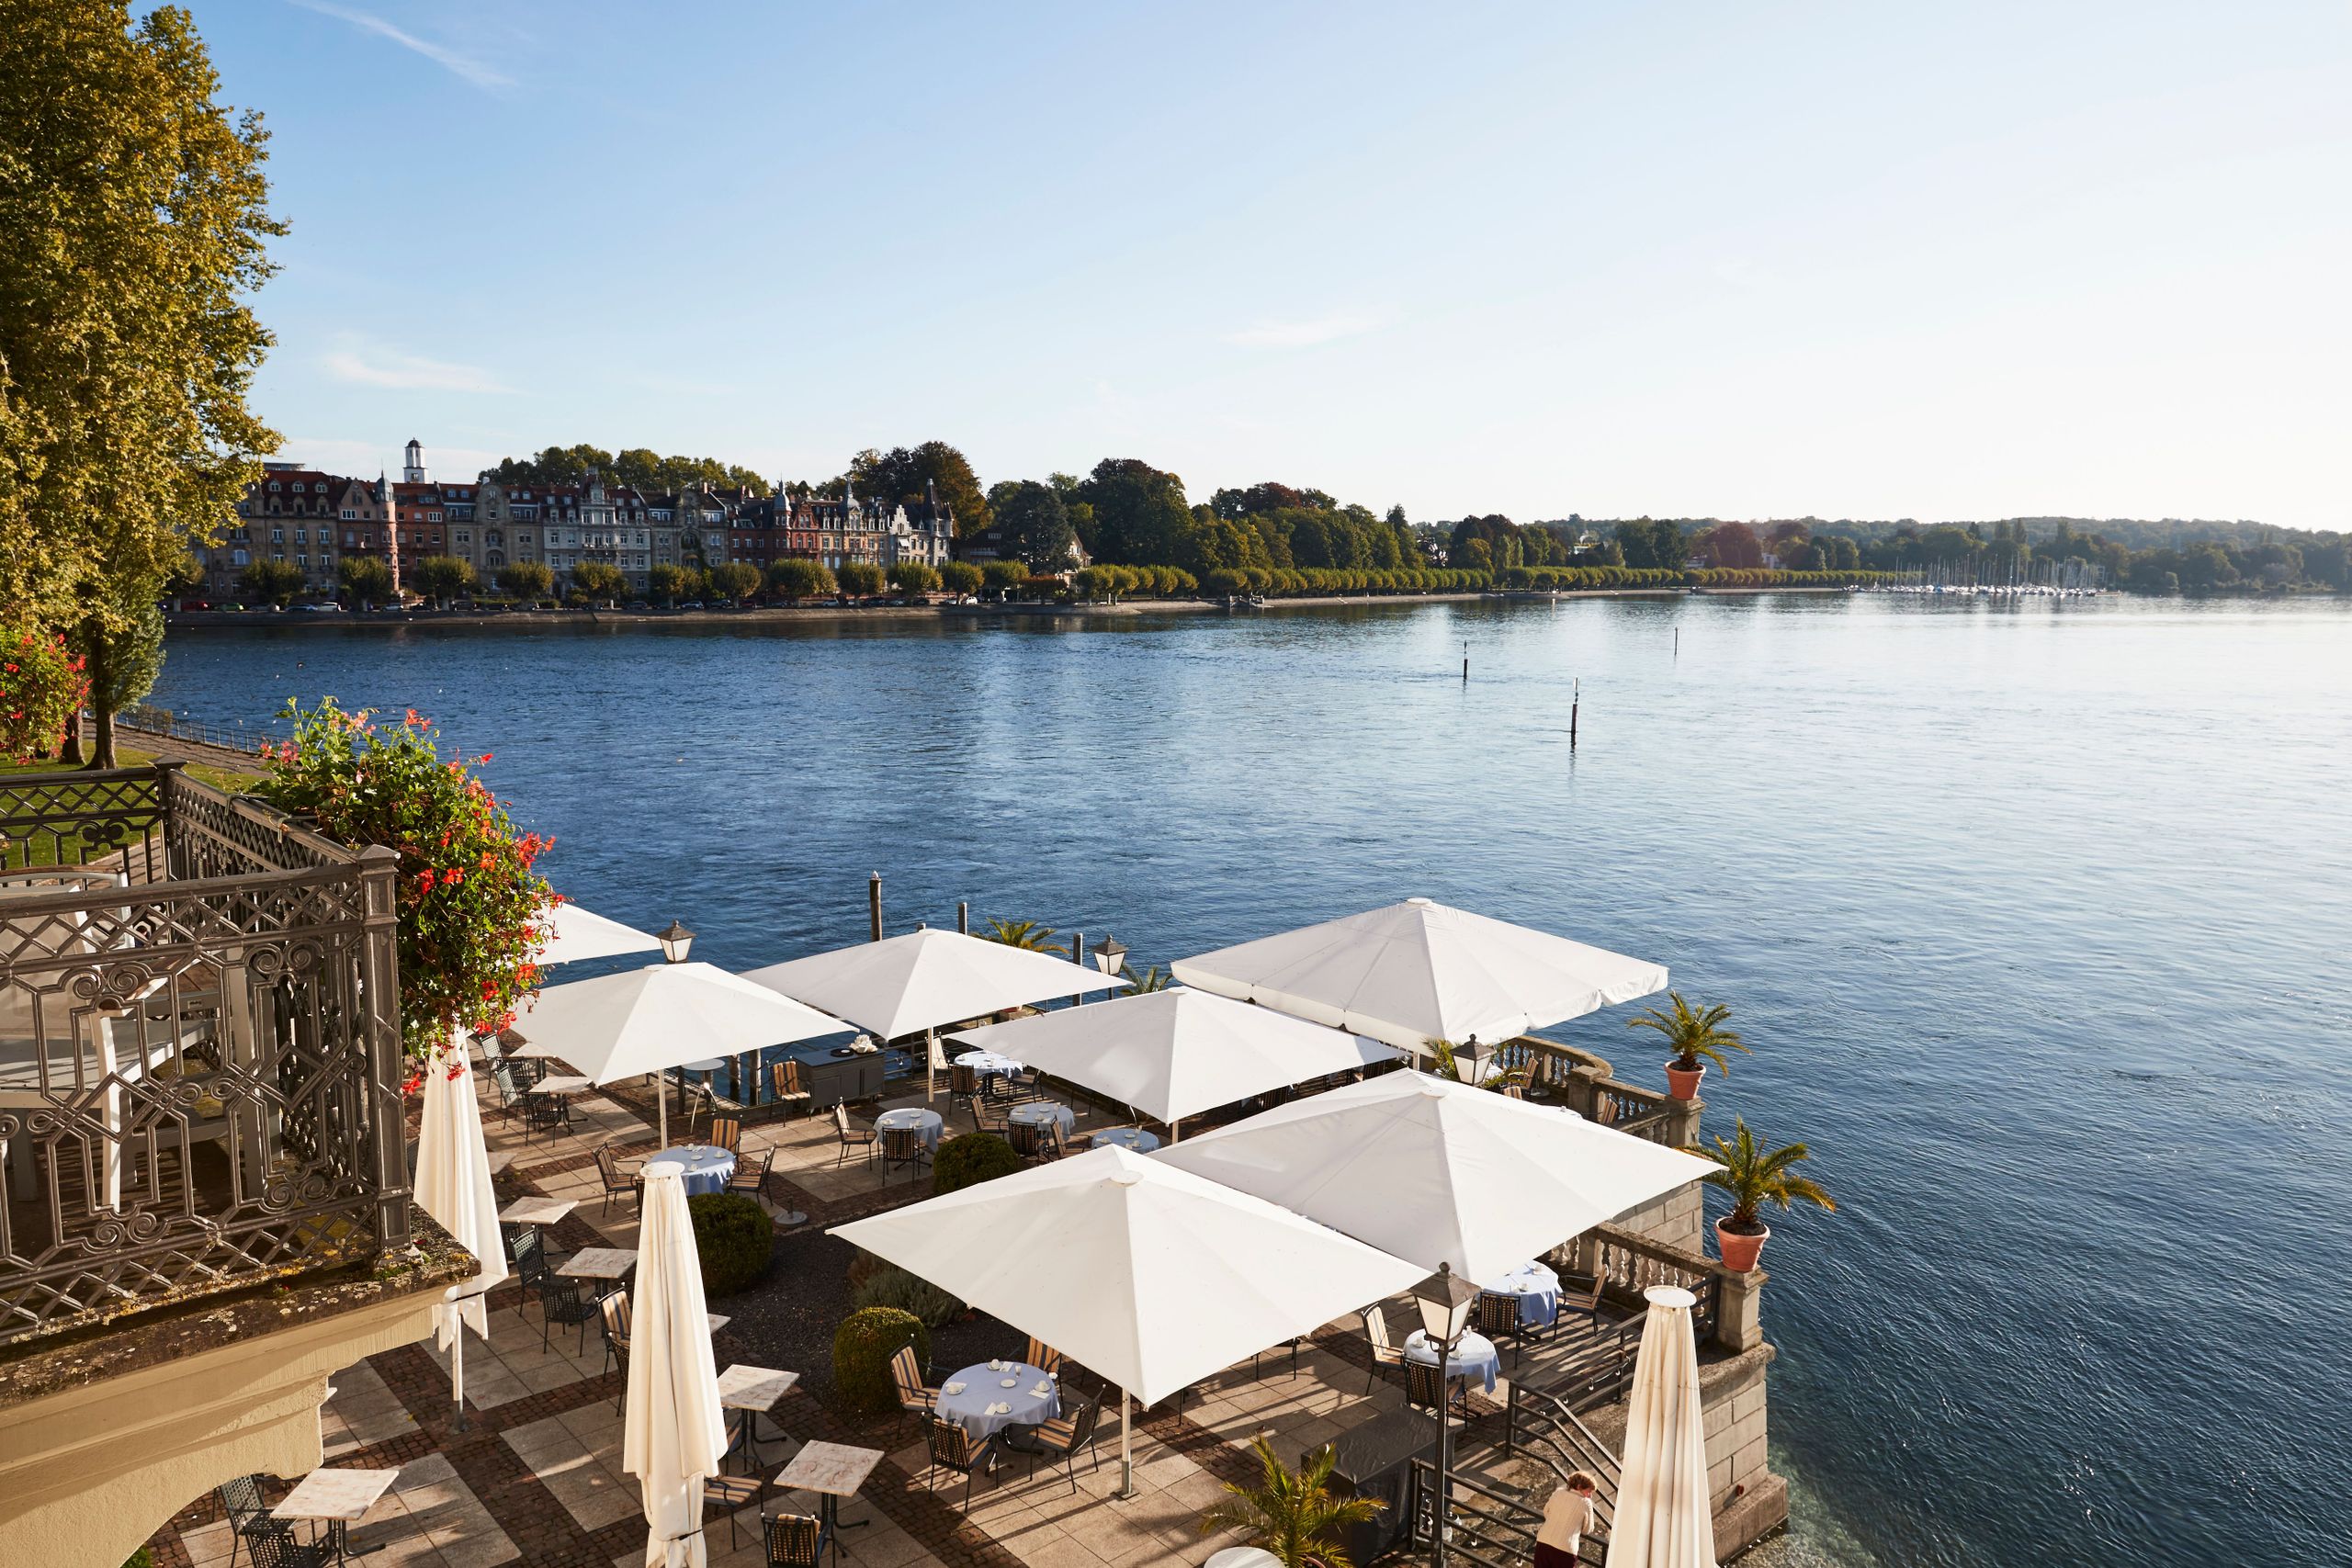 Steigenberger Inselhotel, Constance - lakeside terrace